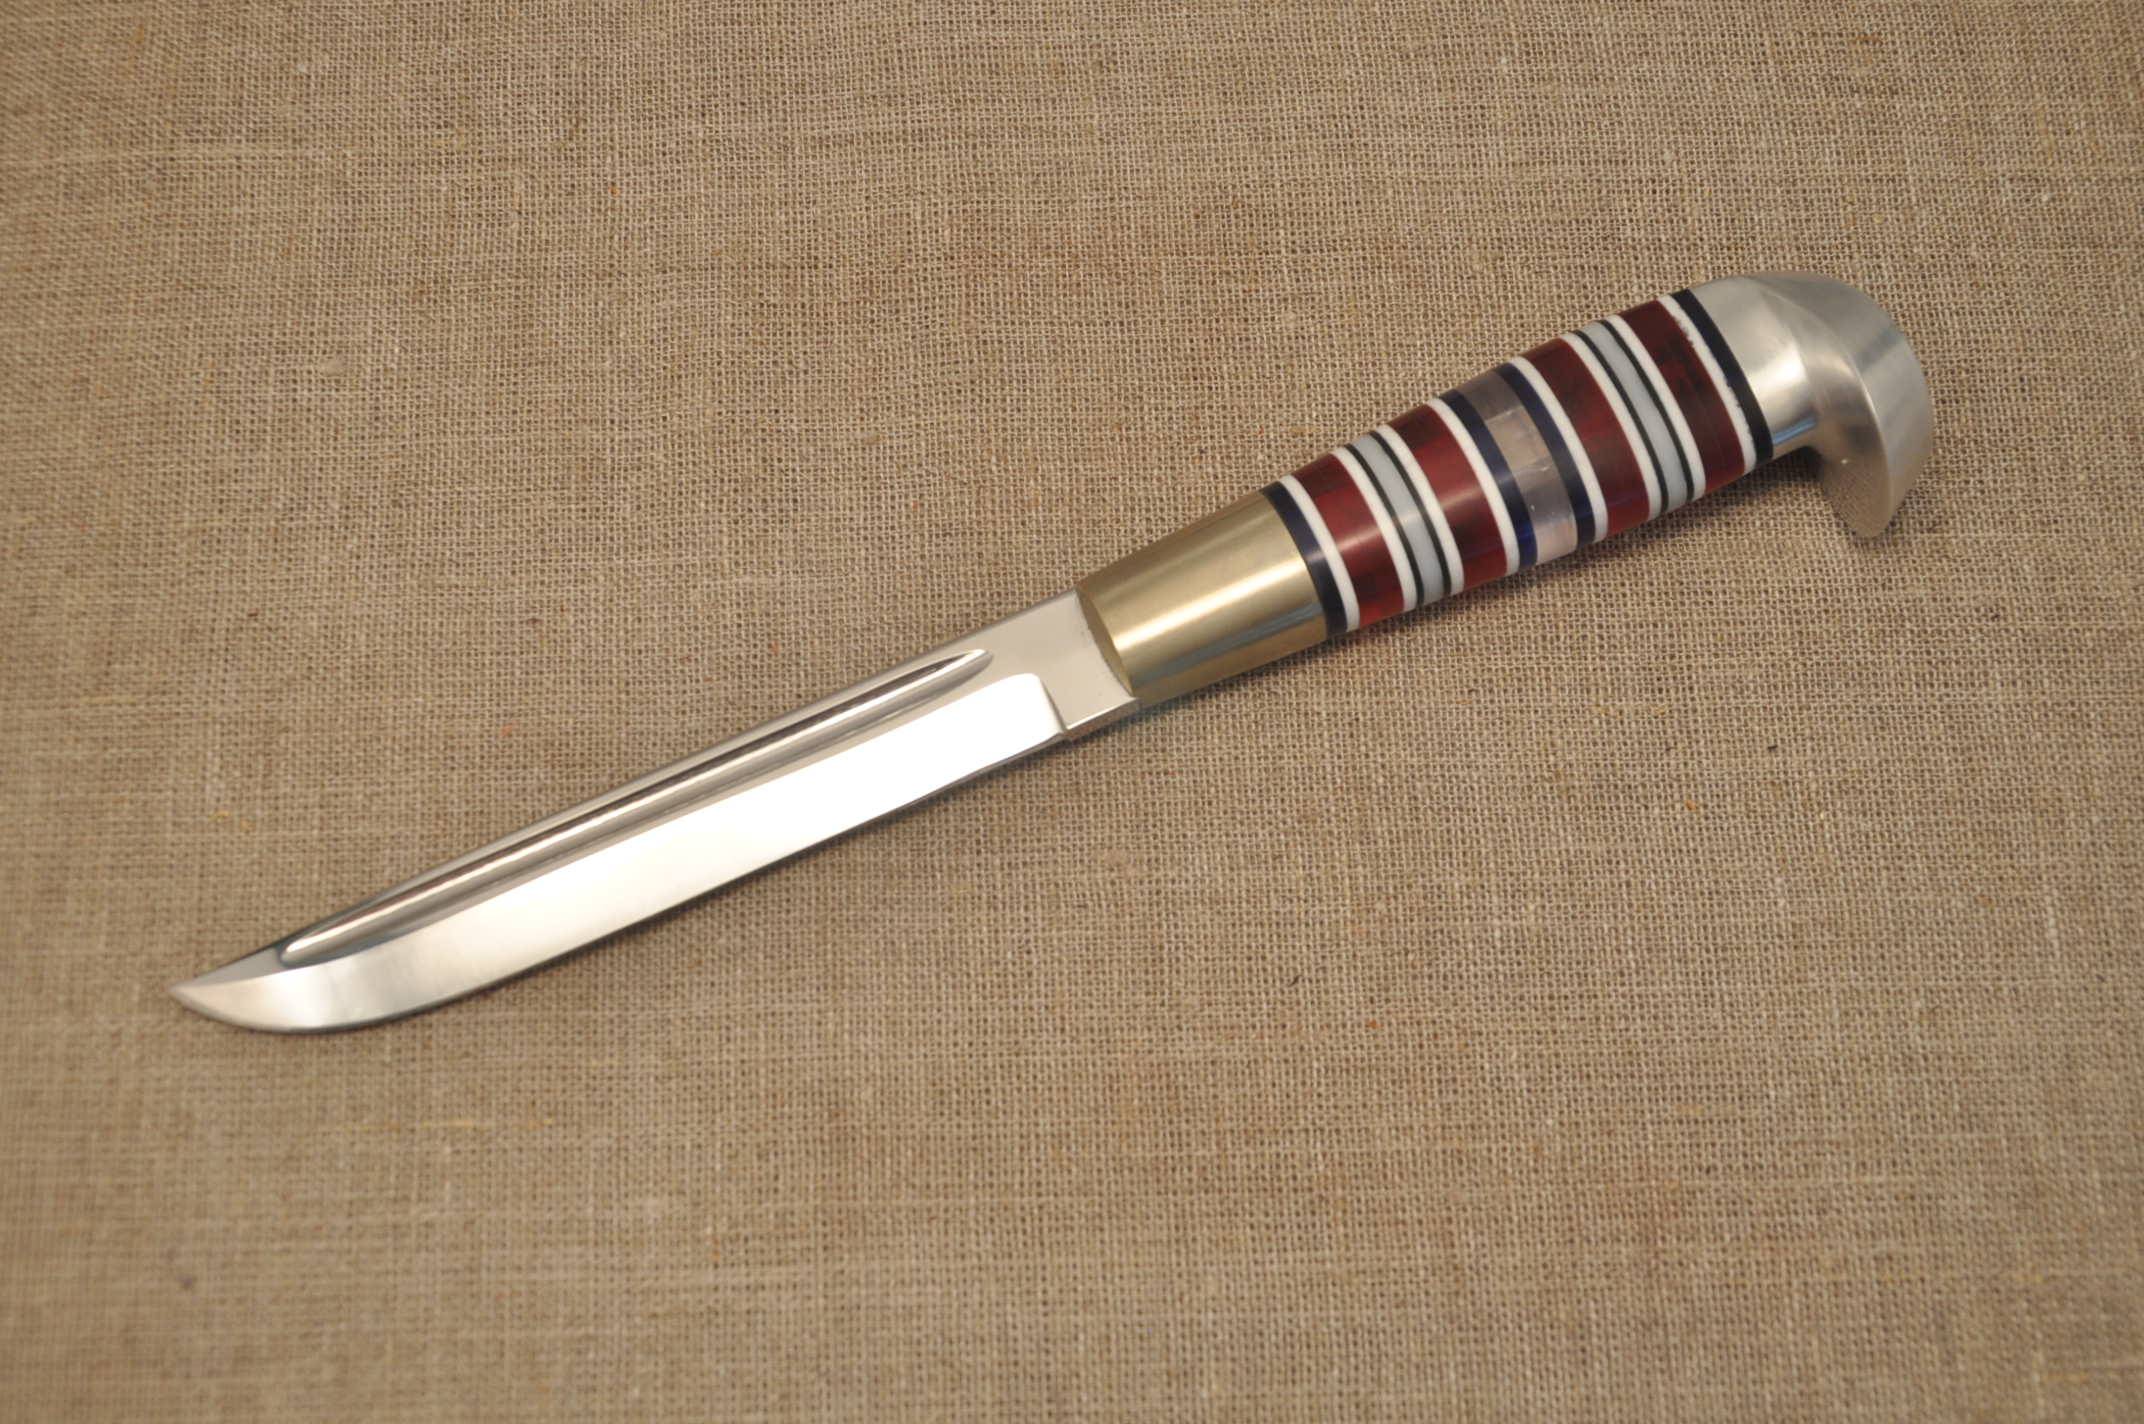 Характеристики легендарного ножа — финки нквд, современные реплики